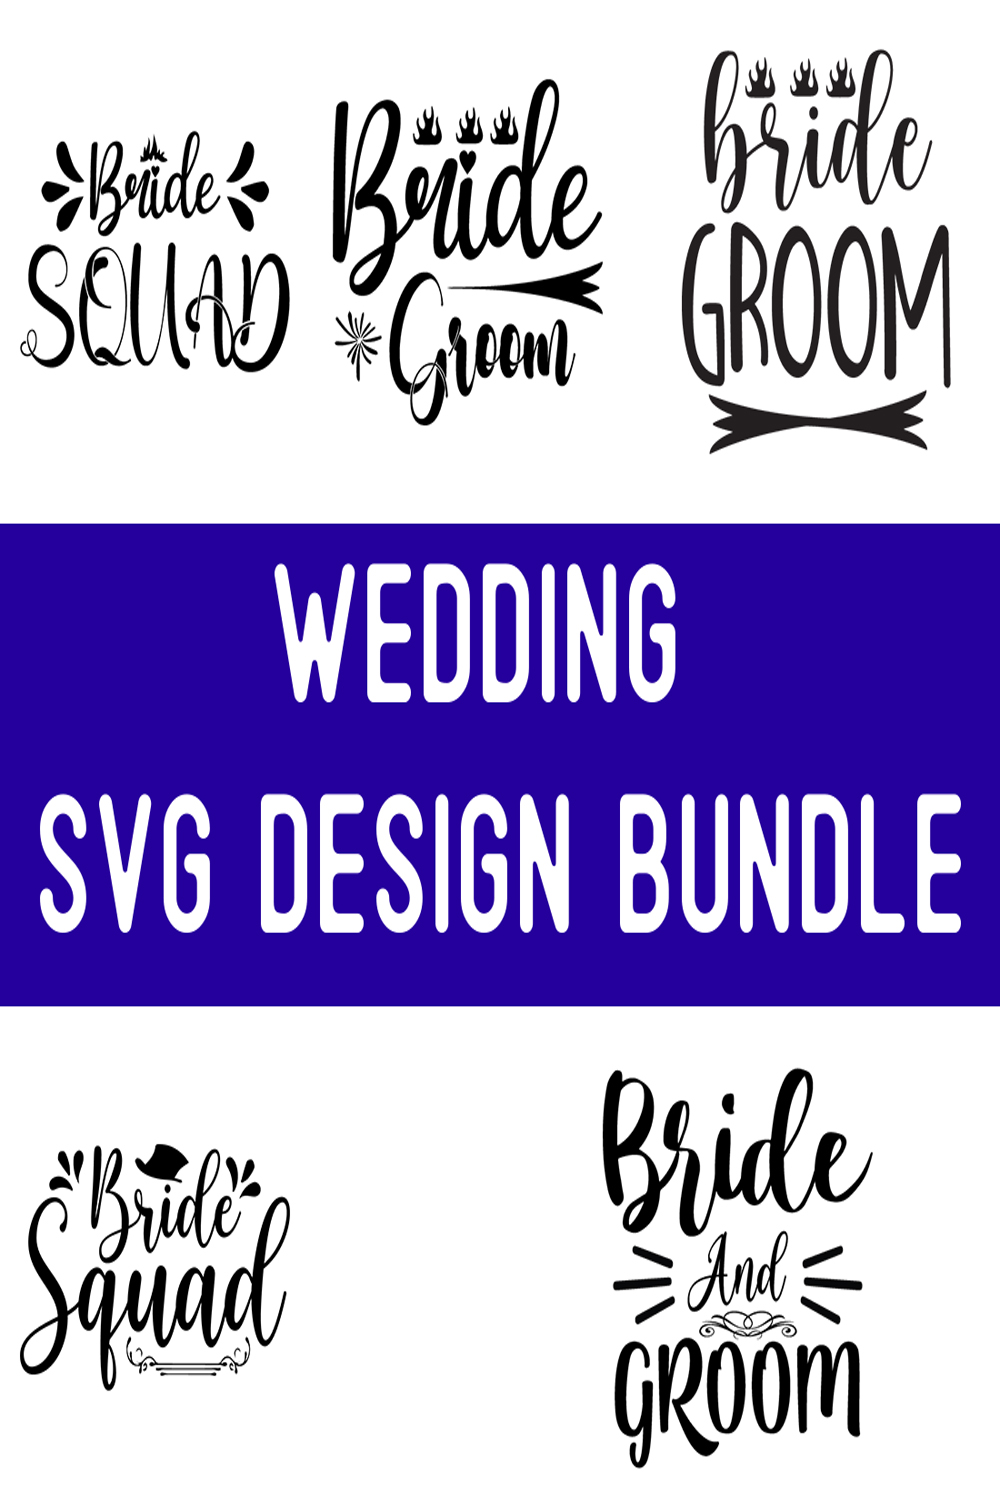 wedding SVG Design Bundle pinterest preview image.